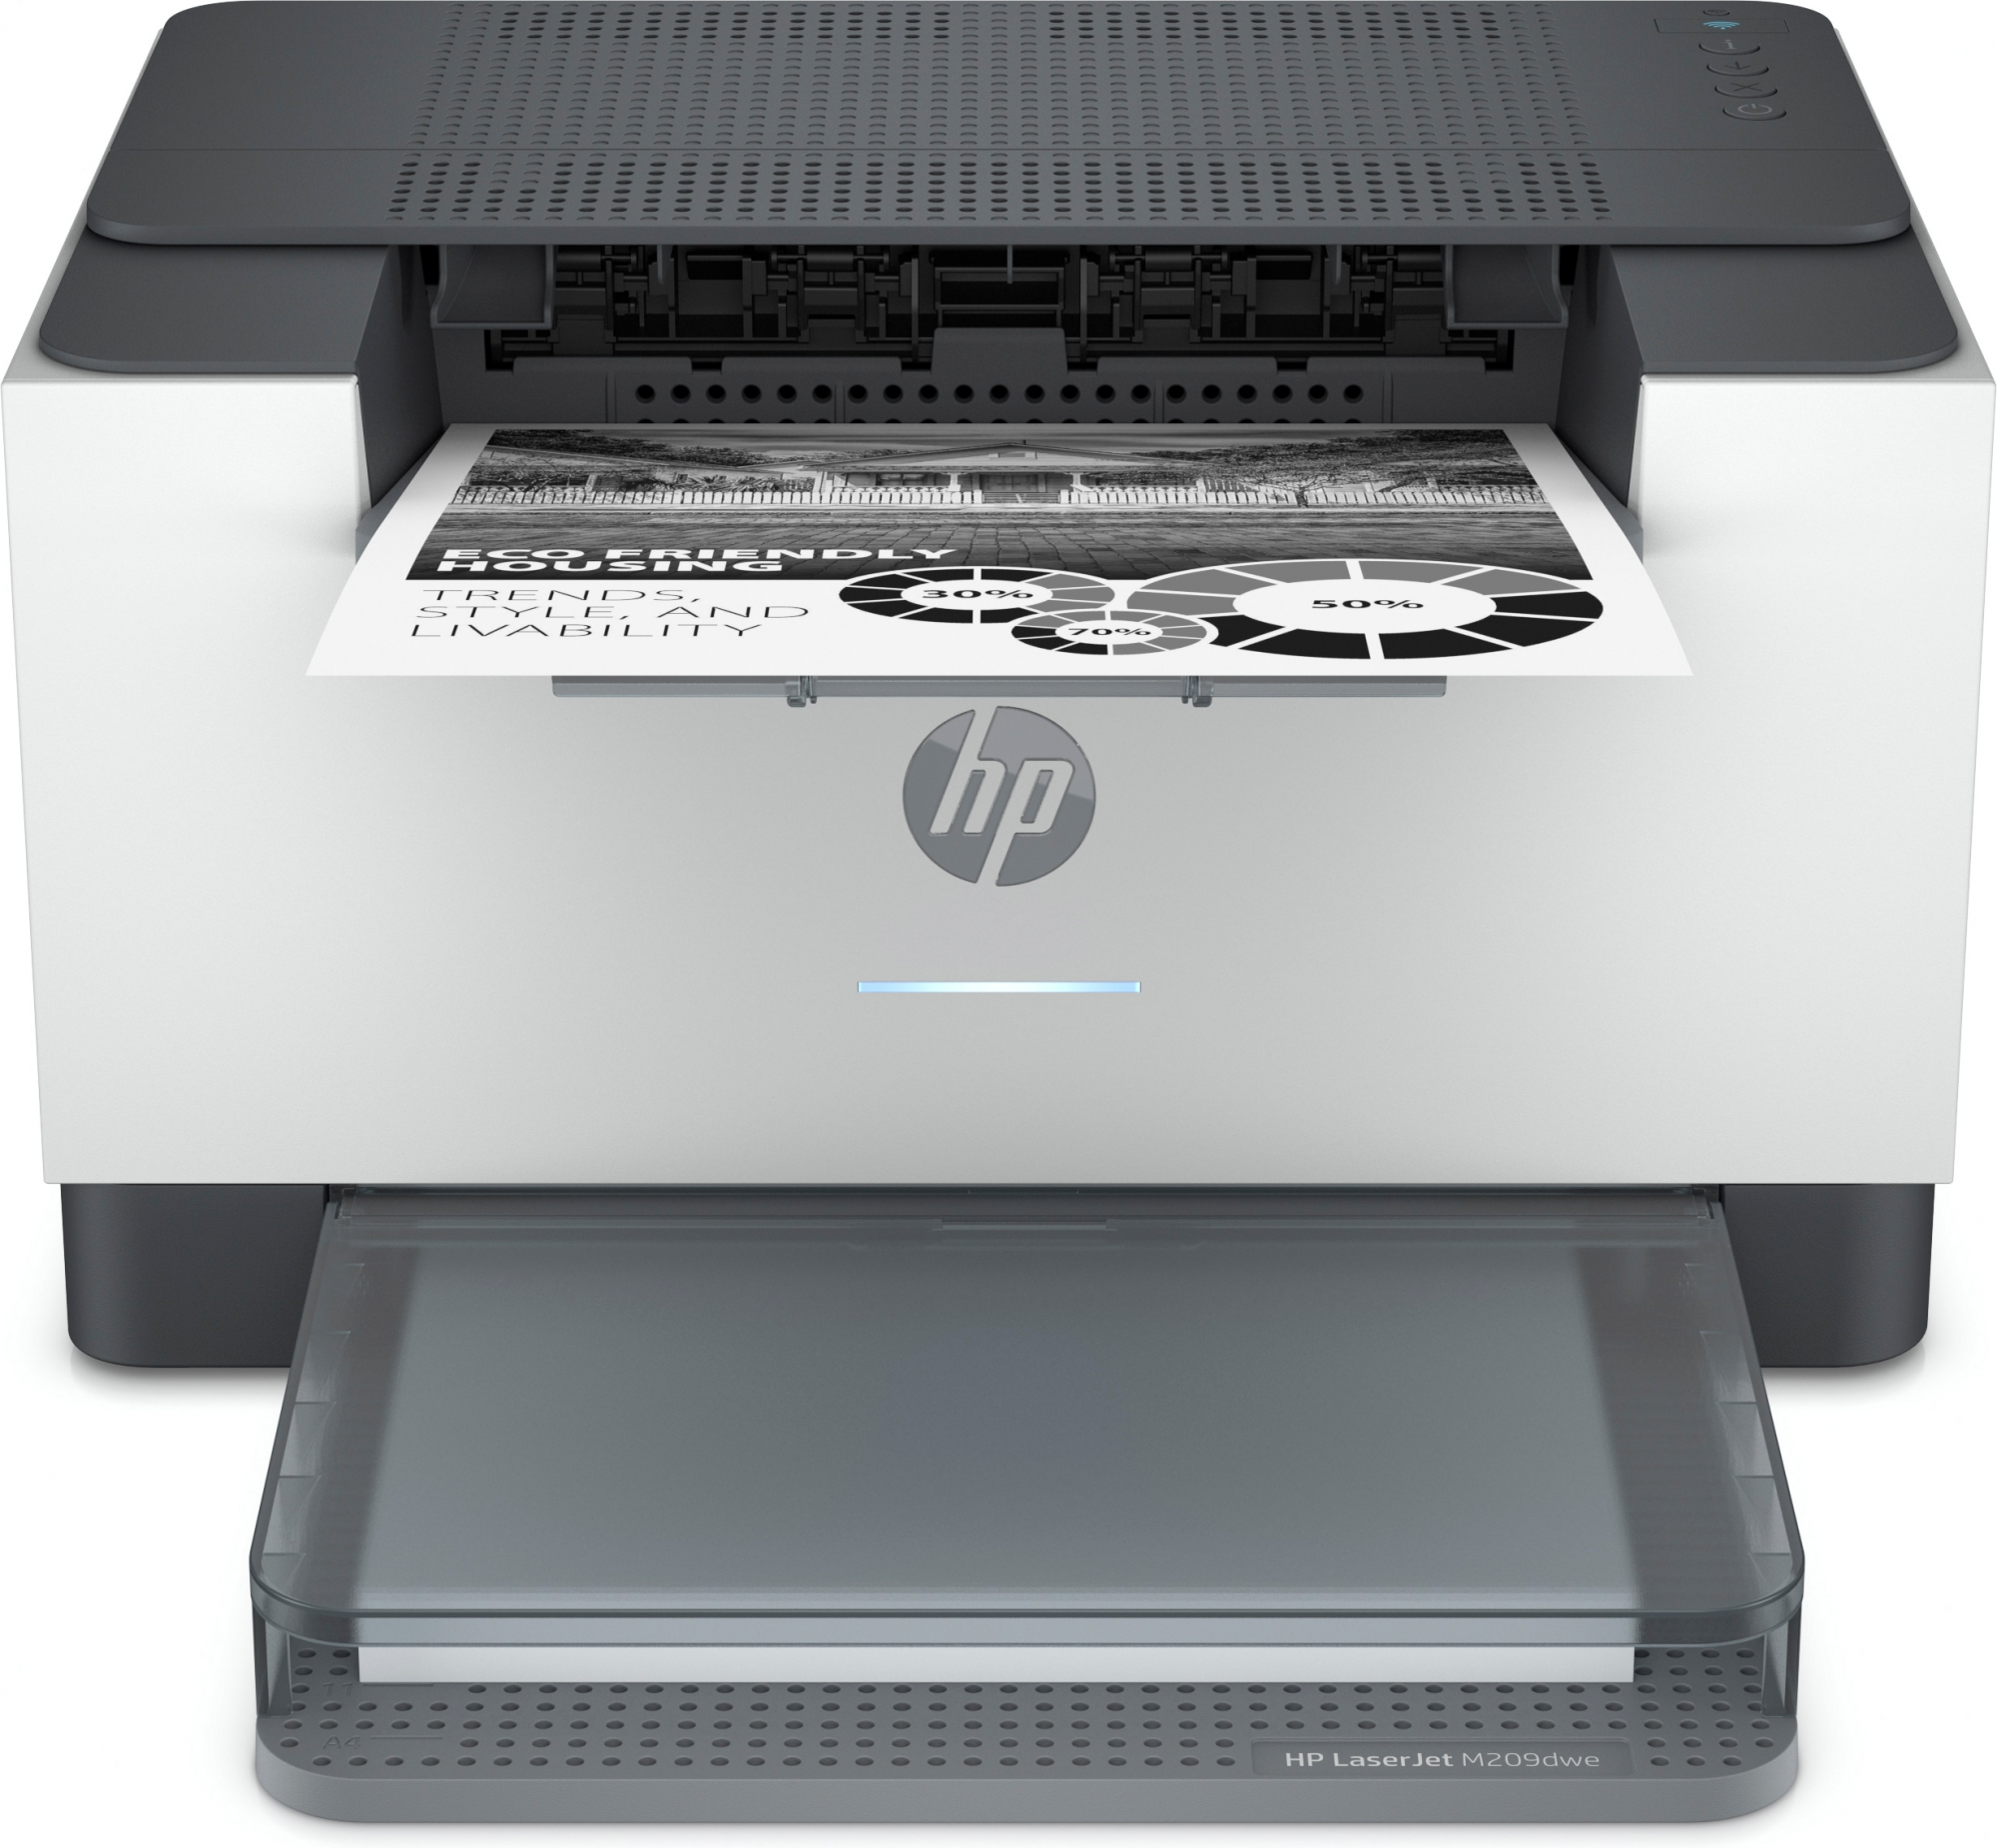 Image of HP LaserJet Stampante HP M209dwe, Bianco e nero, Stampante per Piccoli uffici, Stampa, Wireless; HP+; donea a HP Instant Ink; Stampa fronte/retro; Cartuccia con JetIntelligence